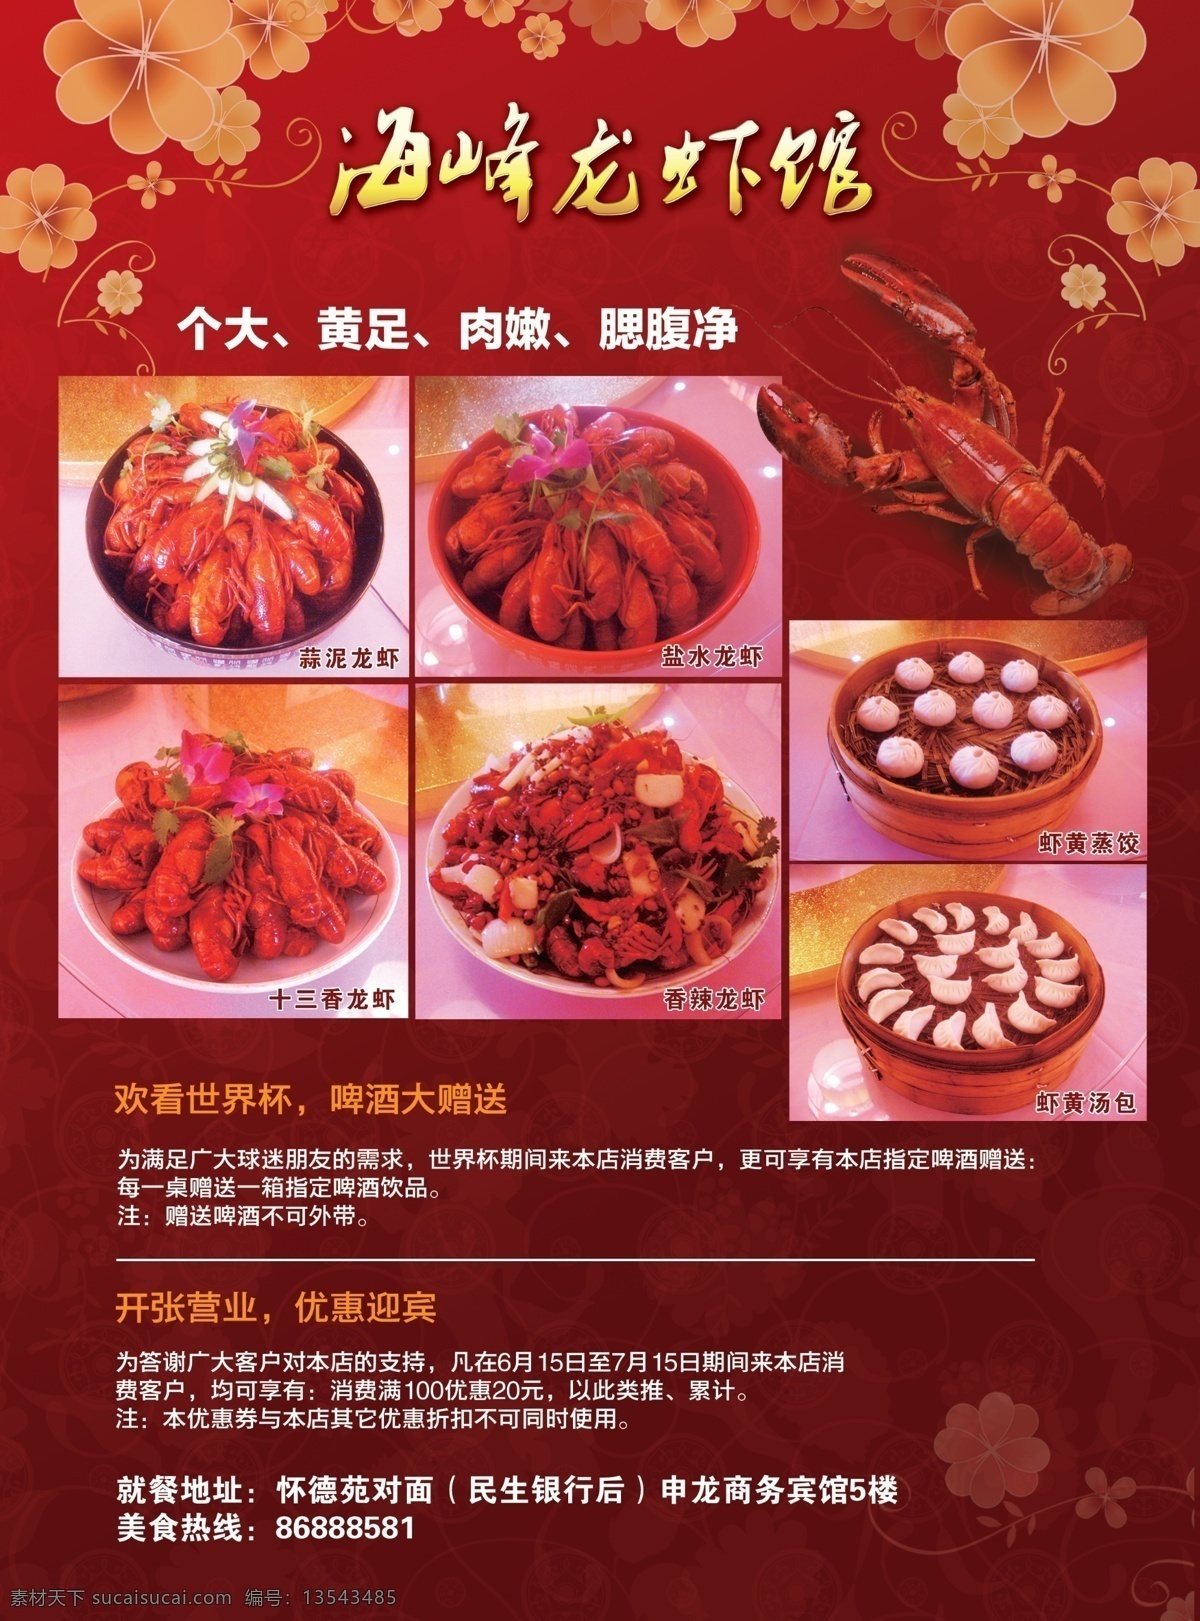 龙虾 dm 宣传单 dm宣传单 美食 广告 商业 活动 传单 促销 开业 打折 包子 饺子 广告设计模板 源文件